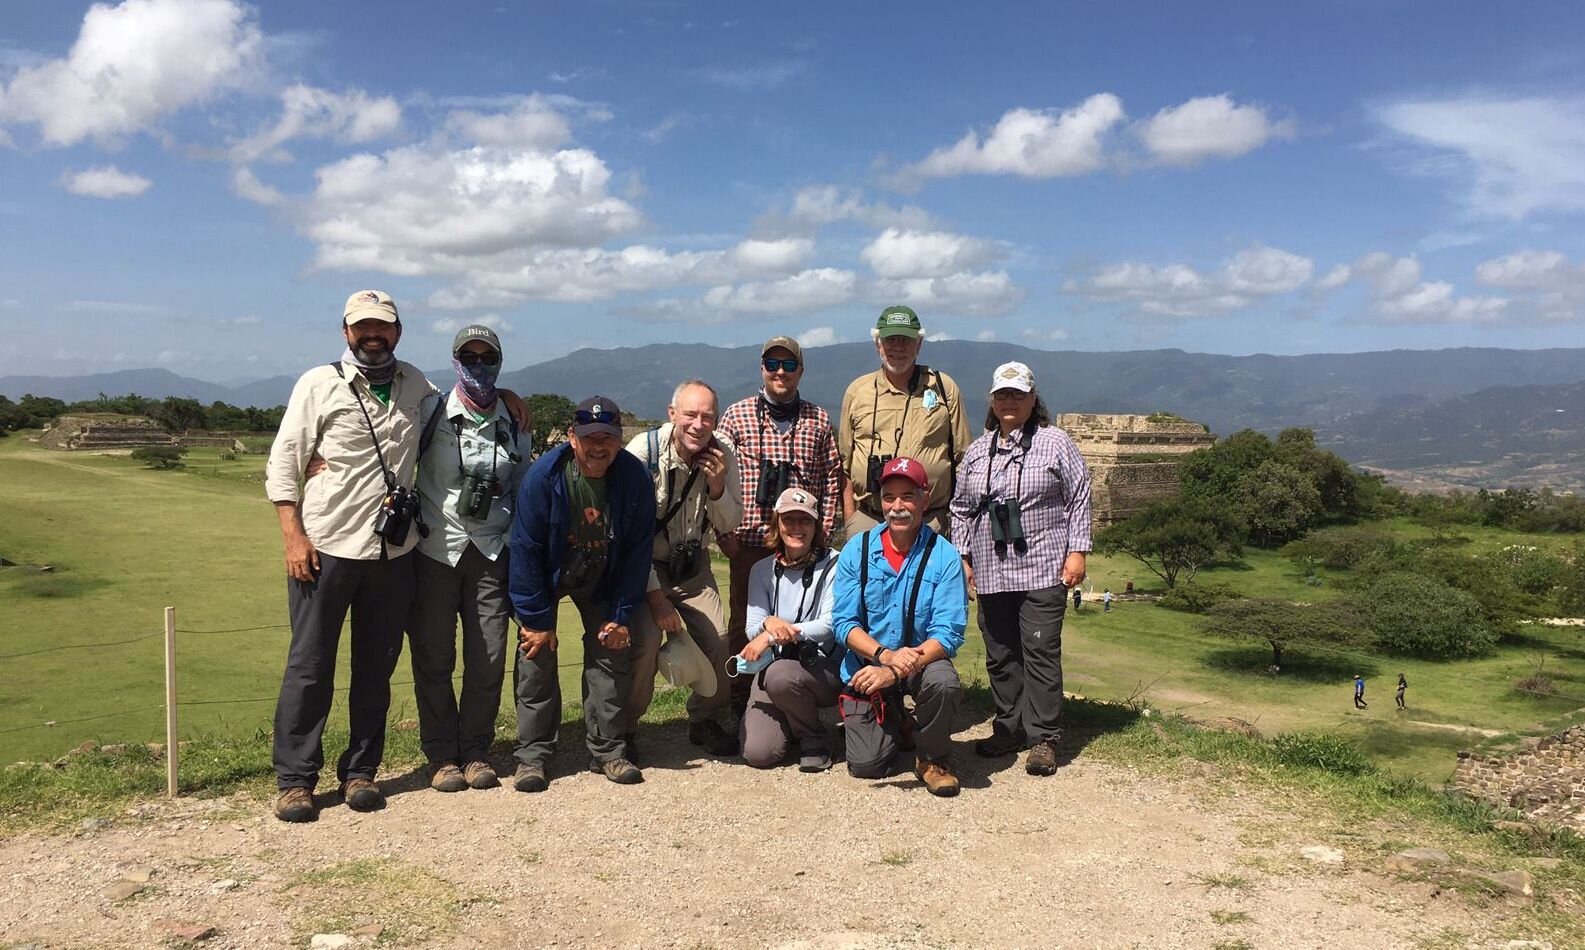 The group atop Monte Albán